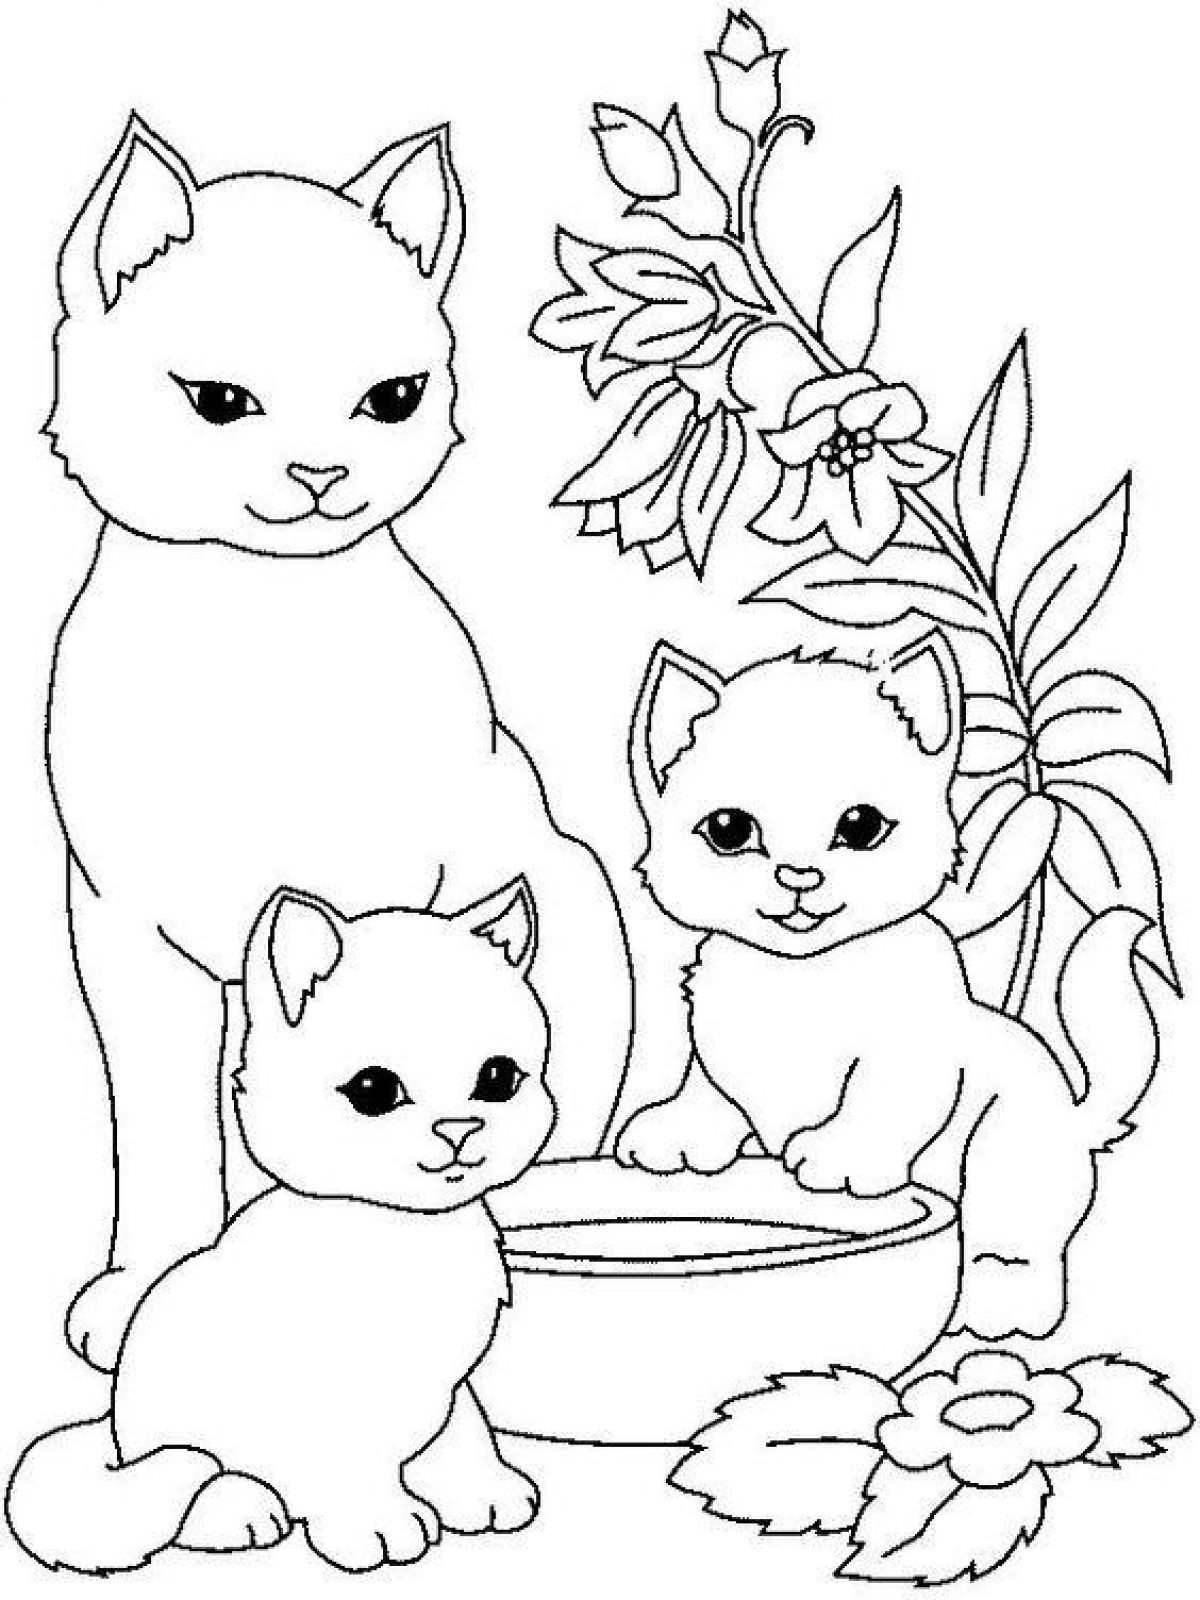 Распечатать на А4 и скачать все раскраски из категории «Коты, кошки, котята»